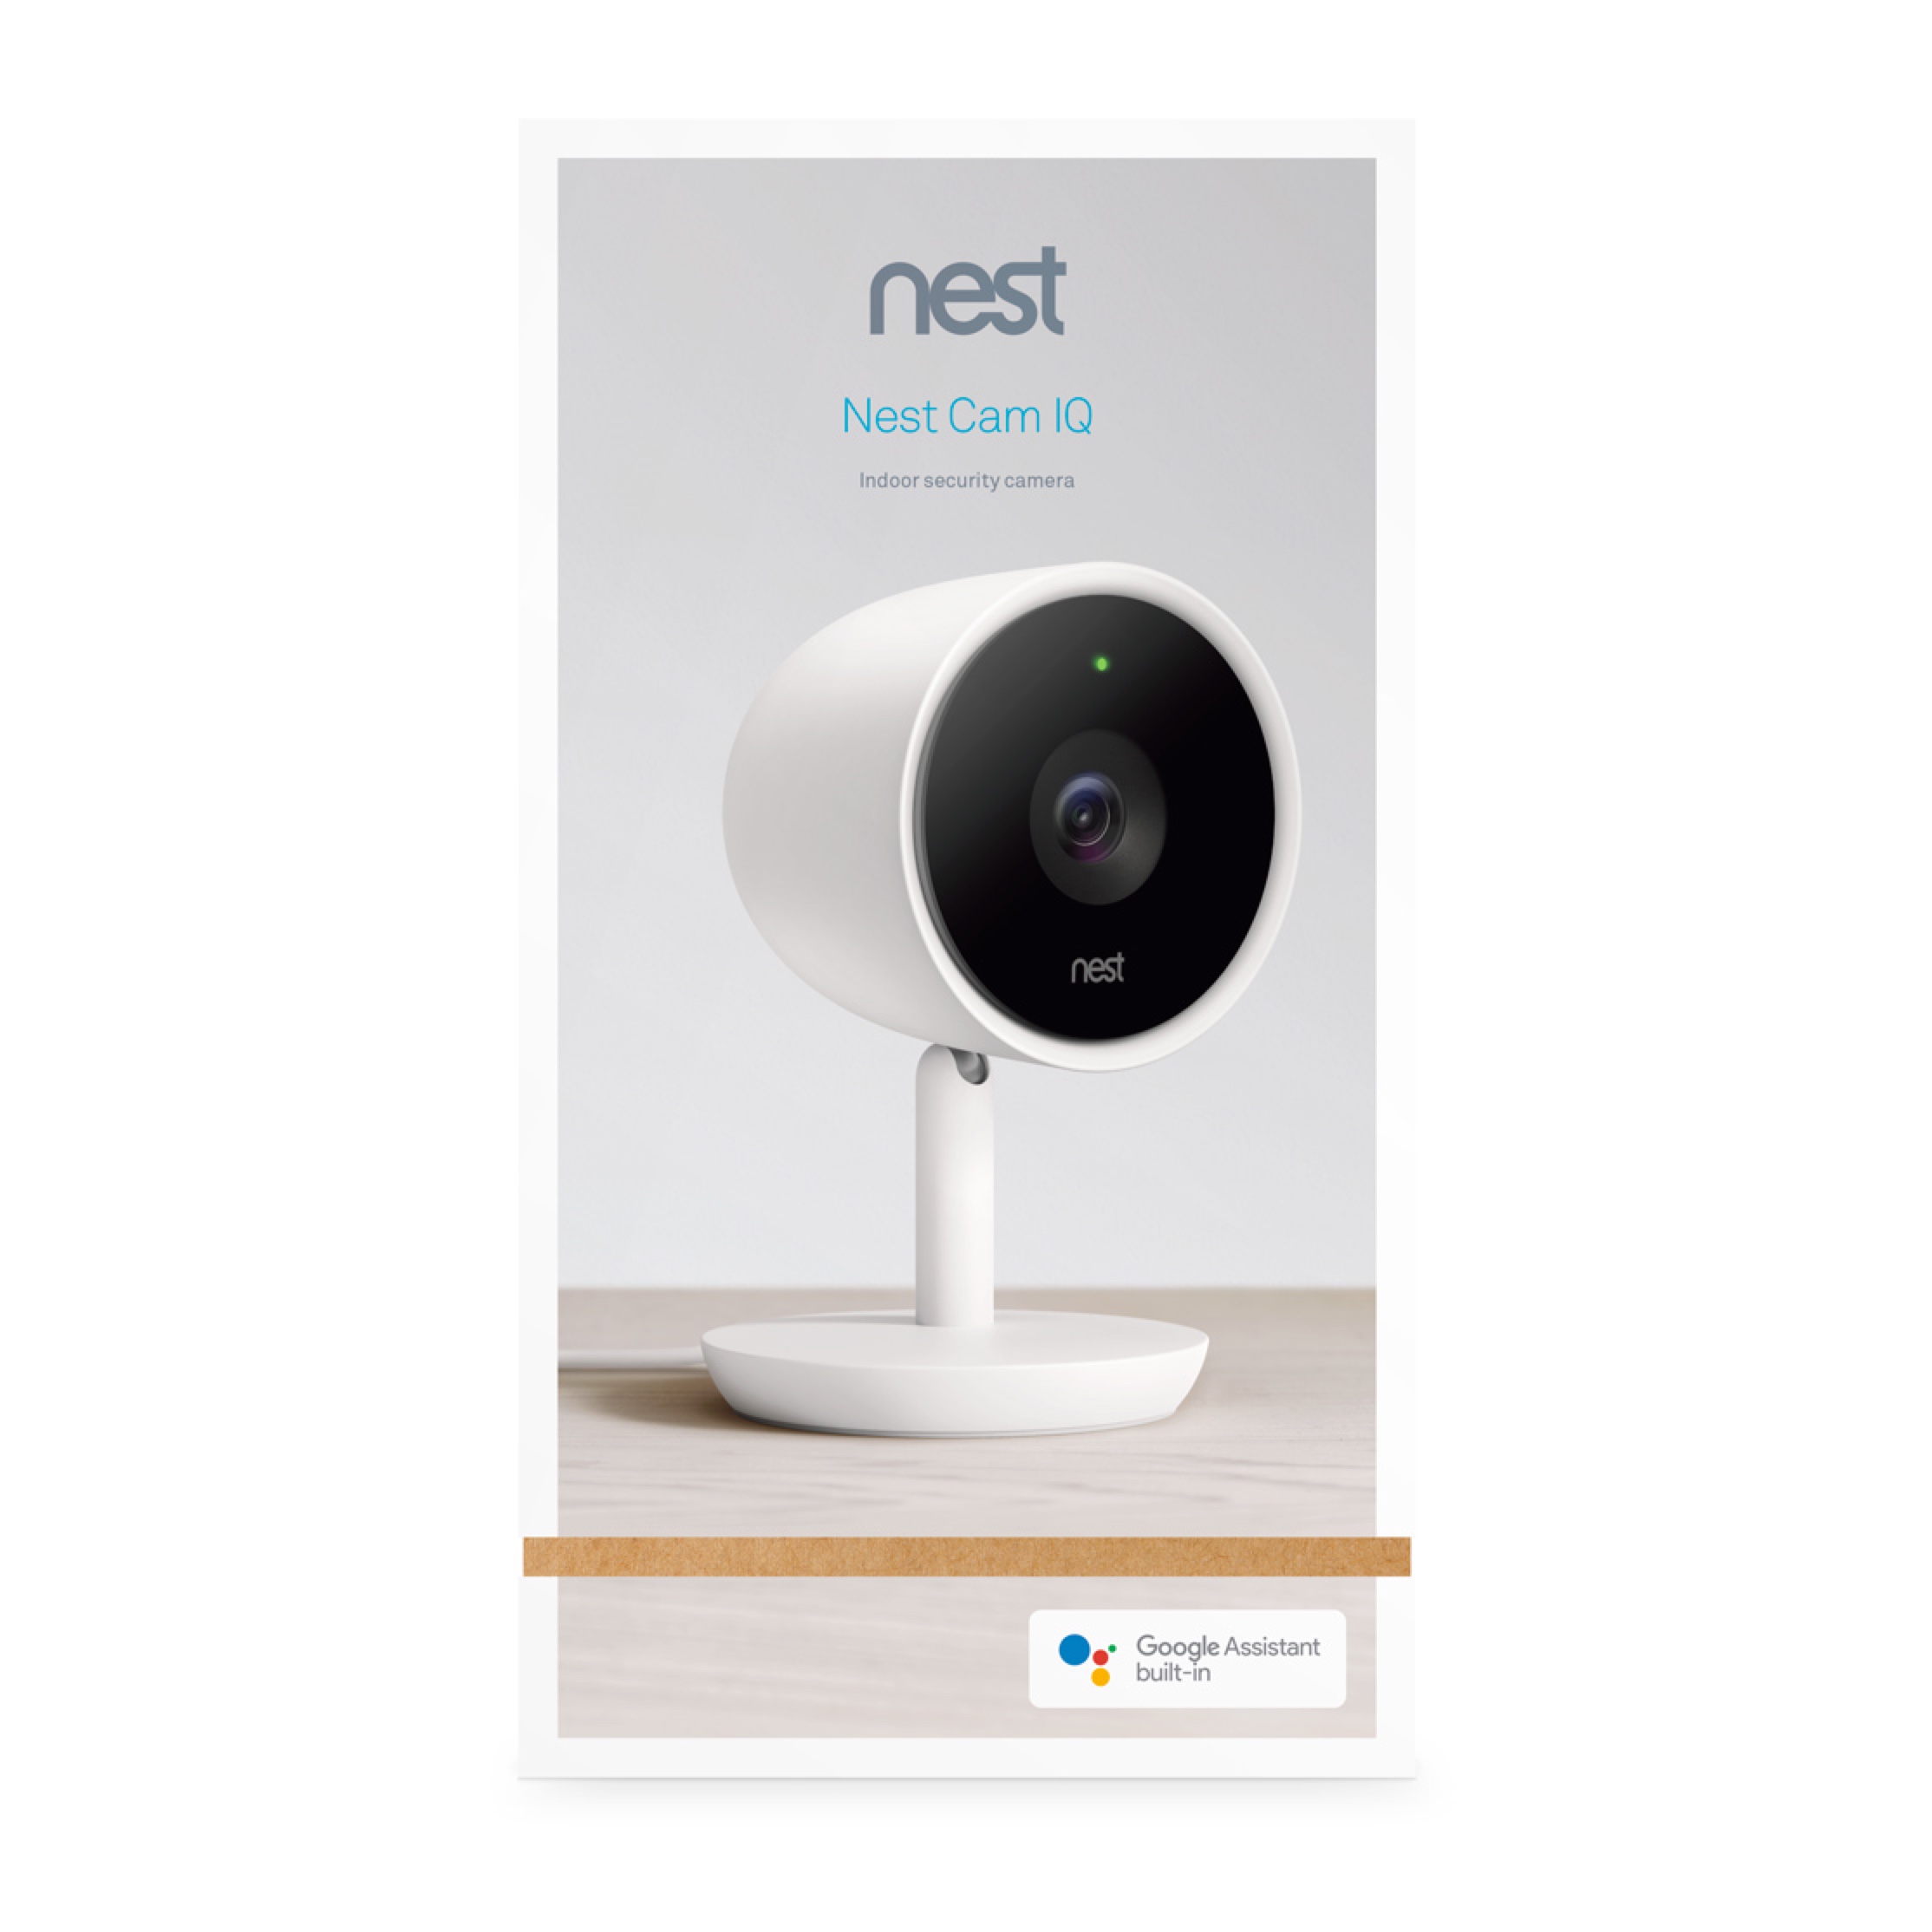 nergal’s nest